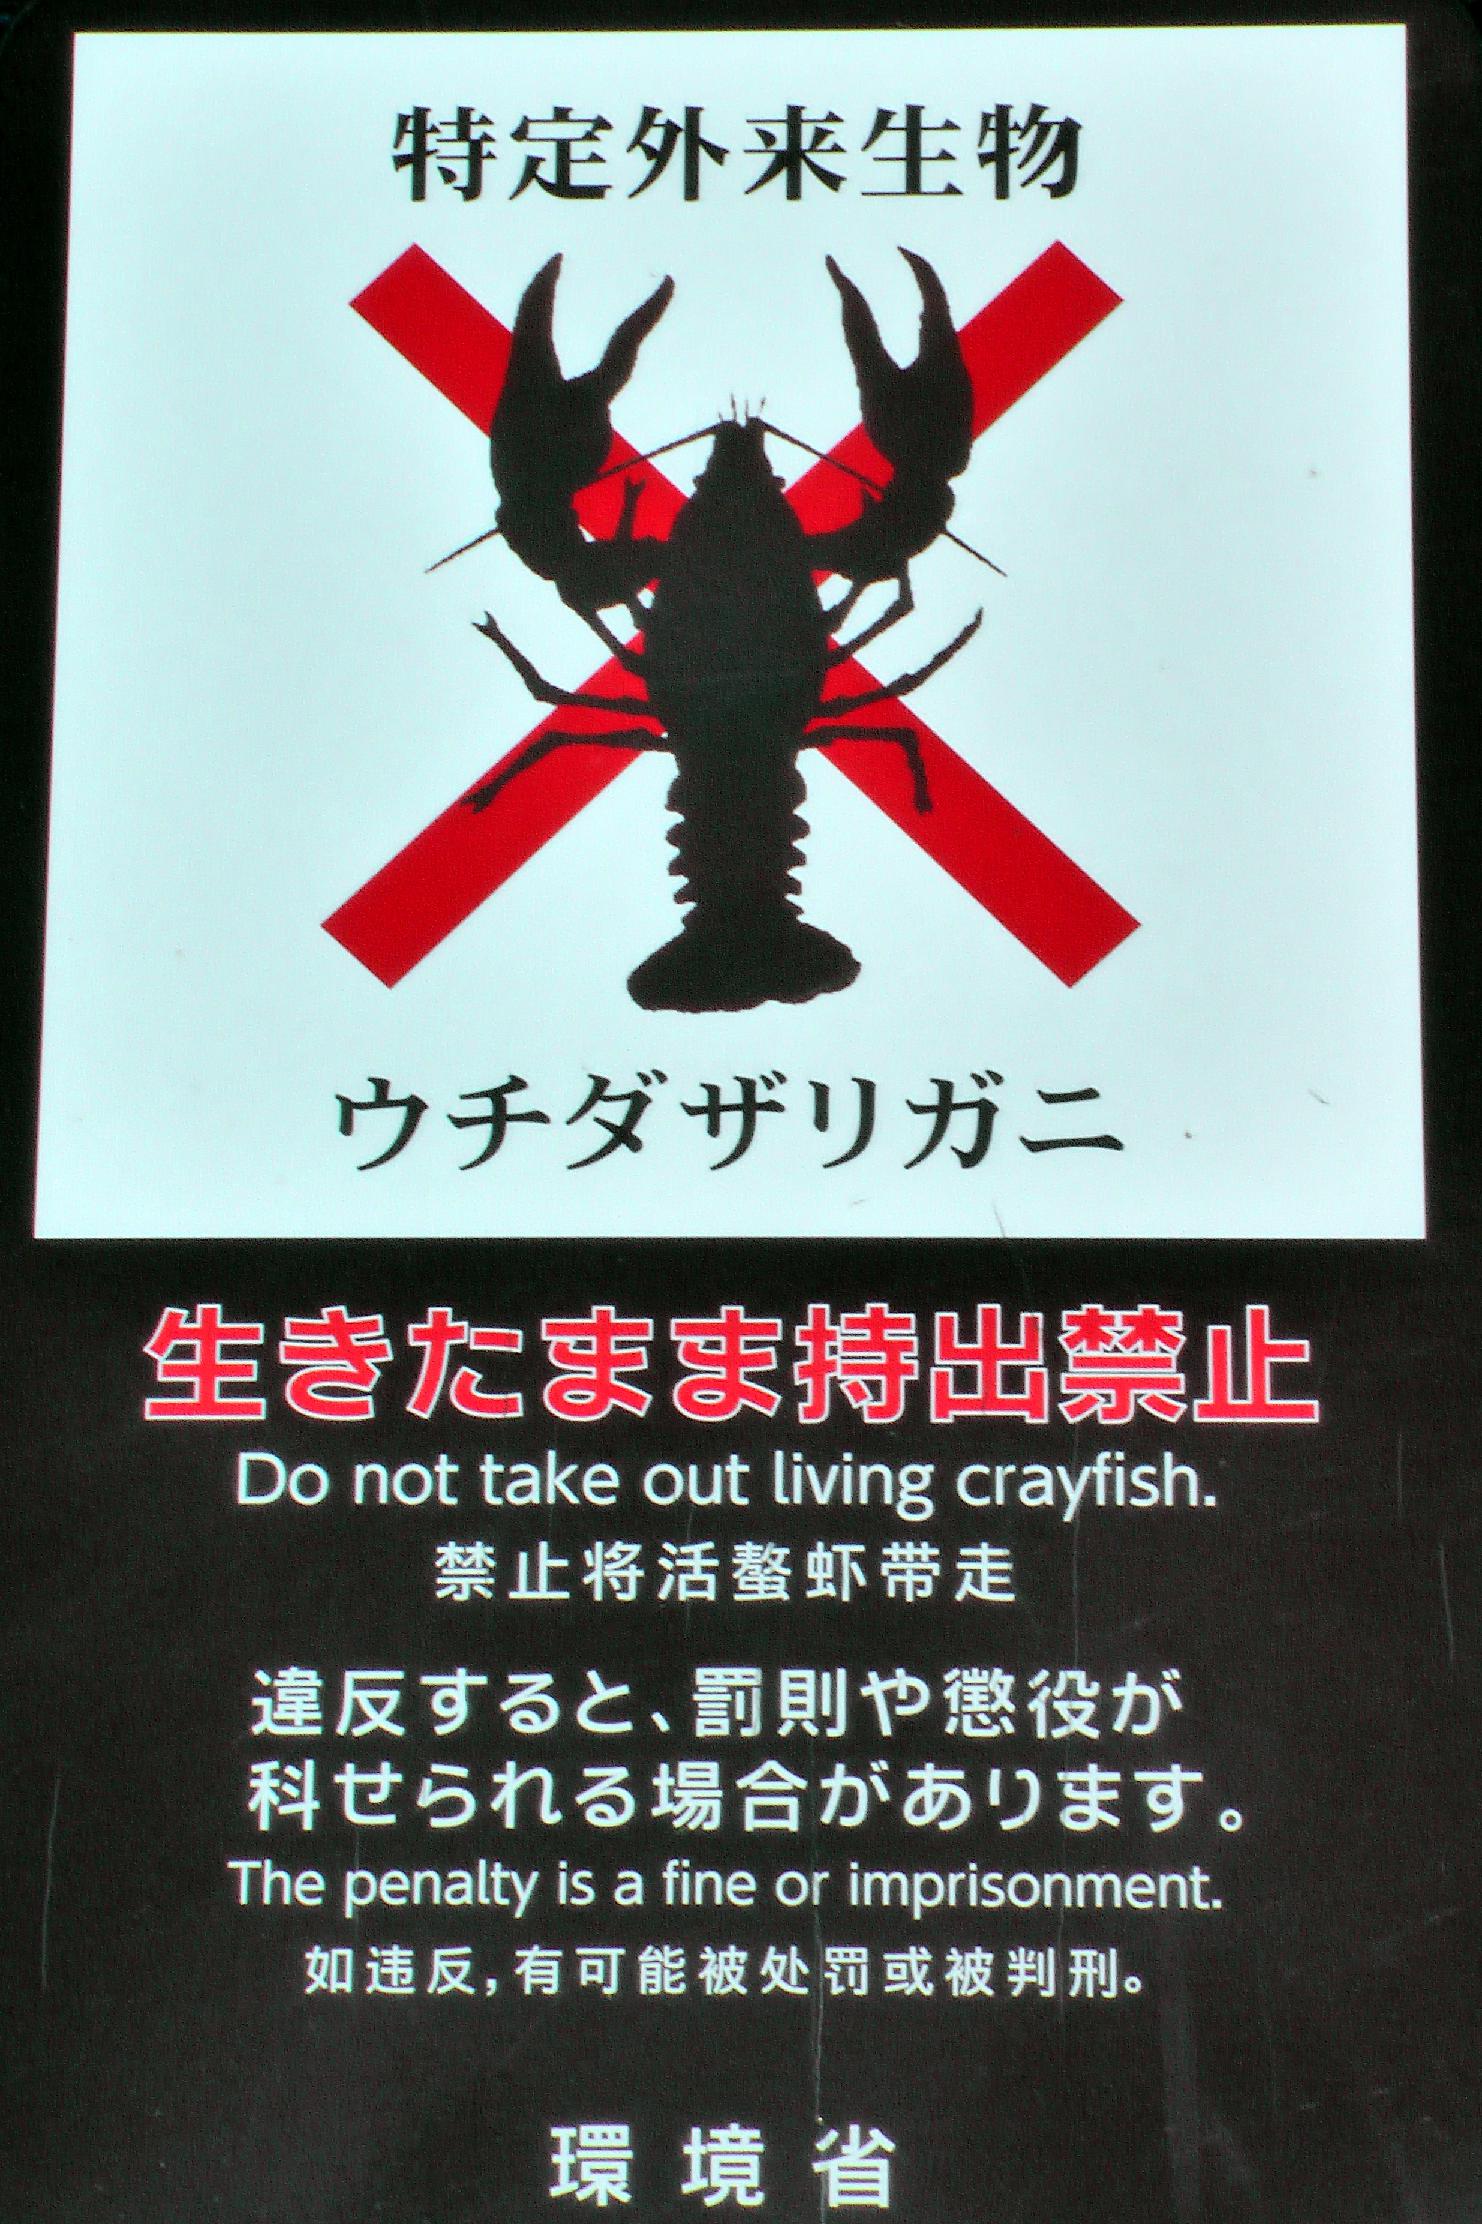 No reason to crab